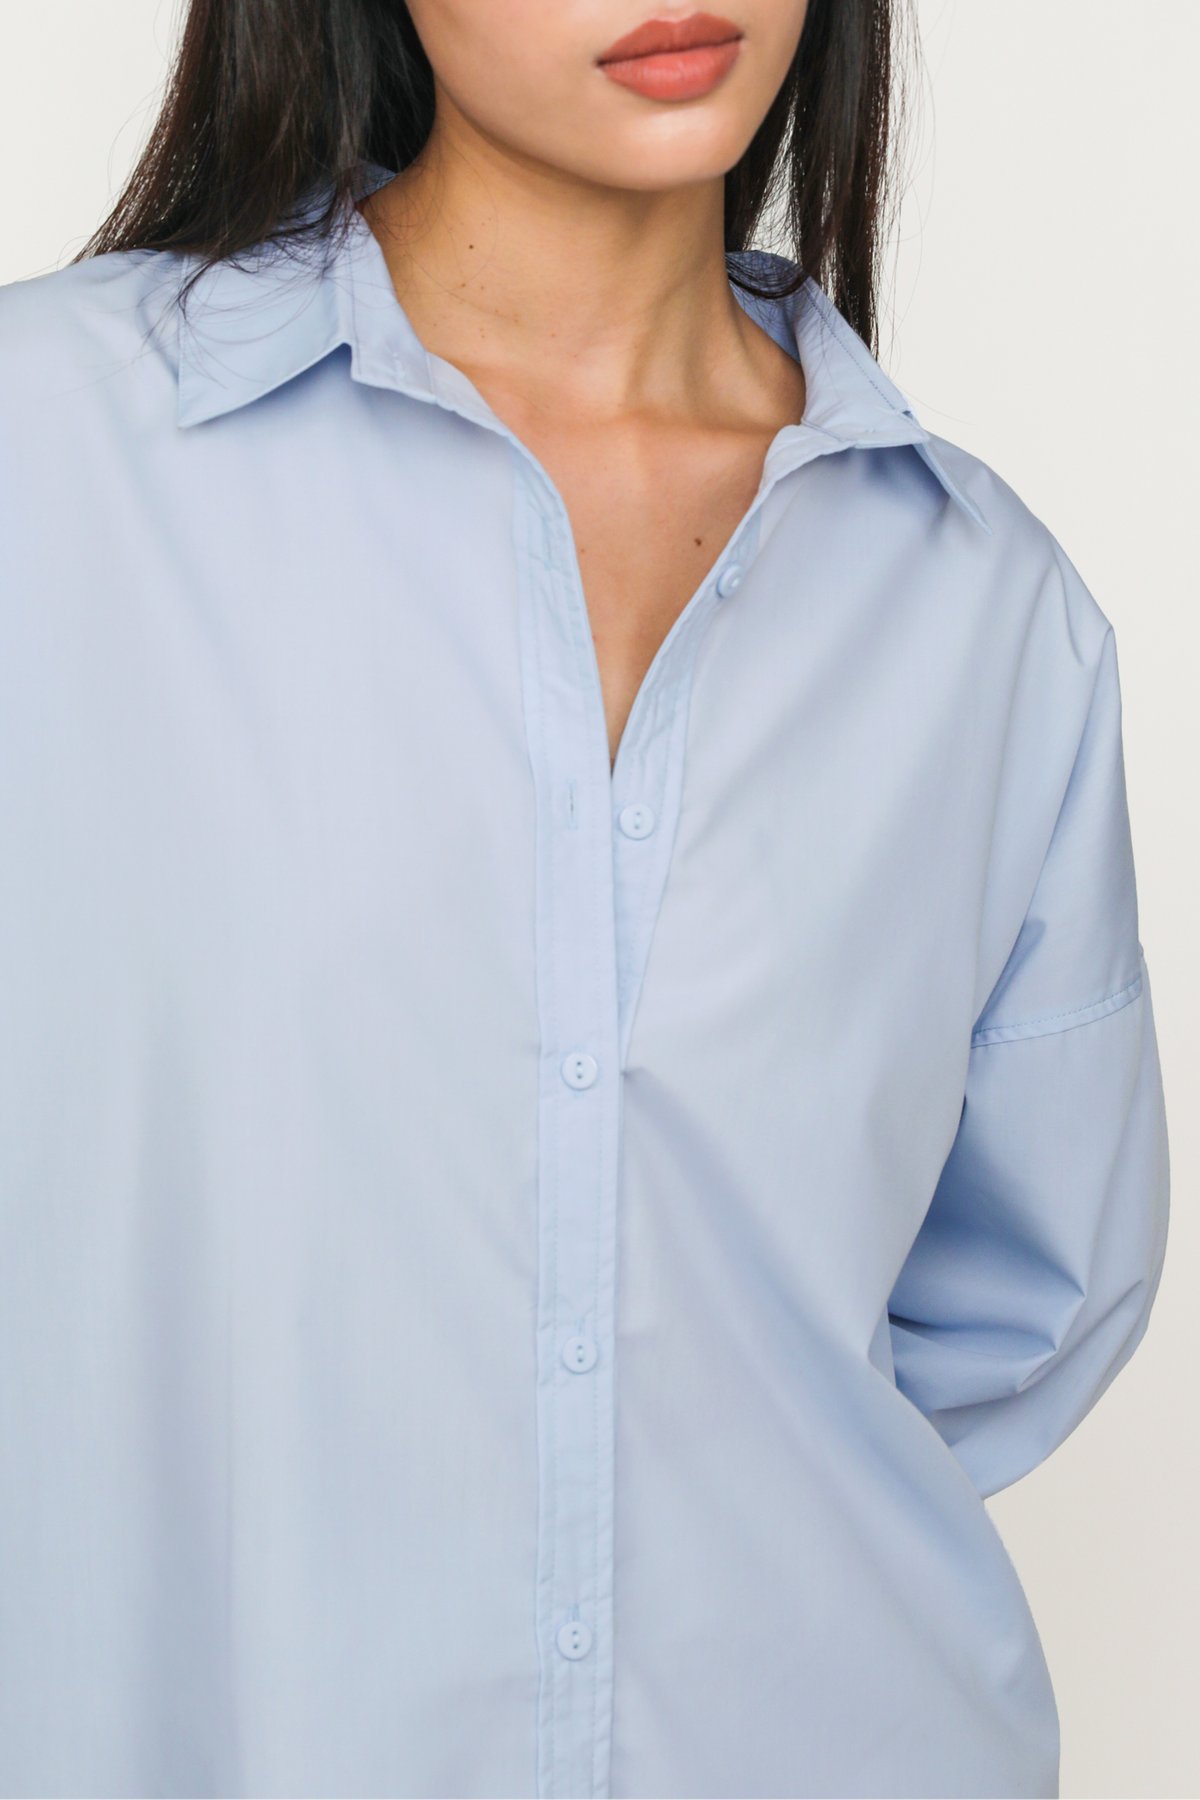 Marco Boyfriend Shirt (Light Blue)